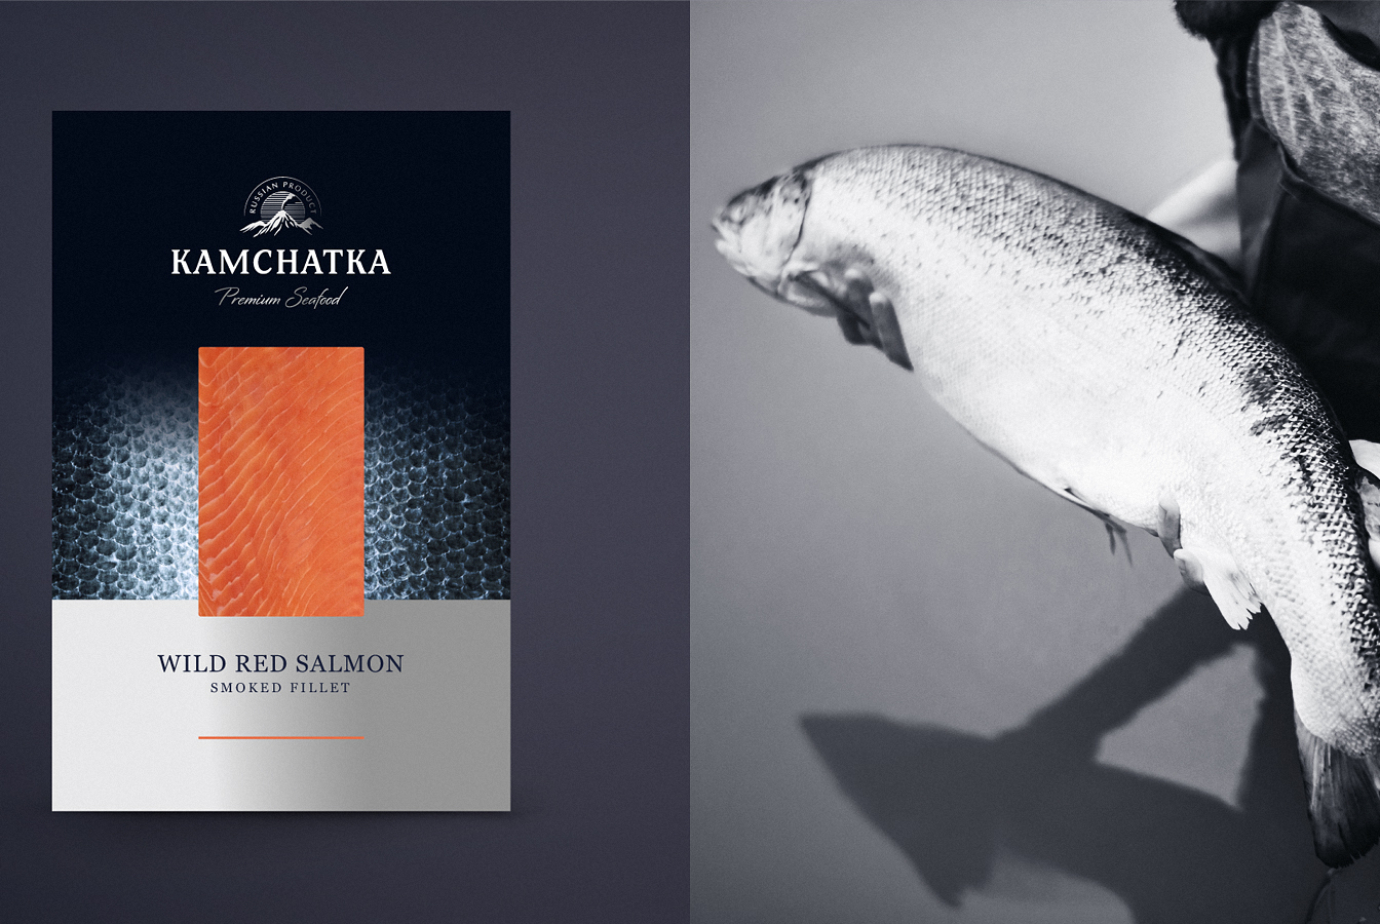 Дизайн упаковки для категории слабосоленой рыбы для бренда Kamchatka